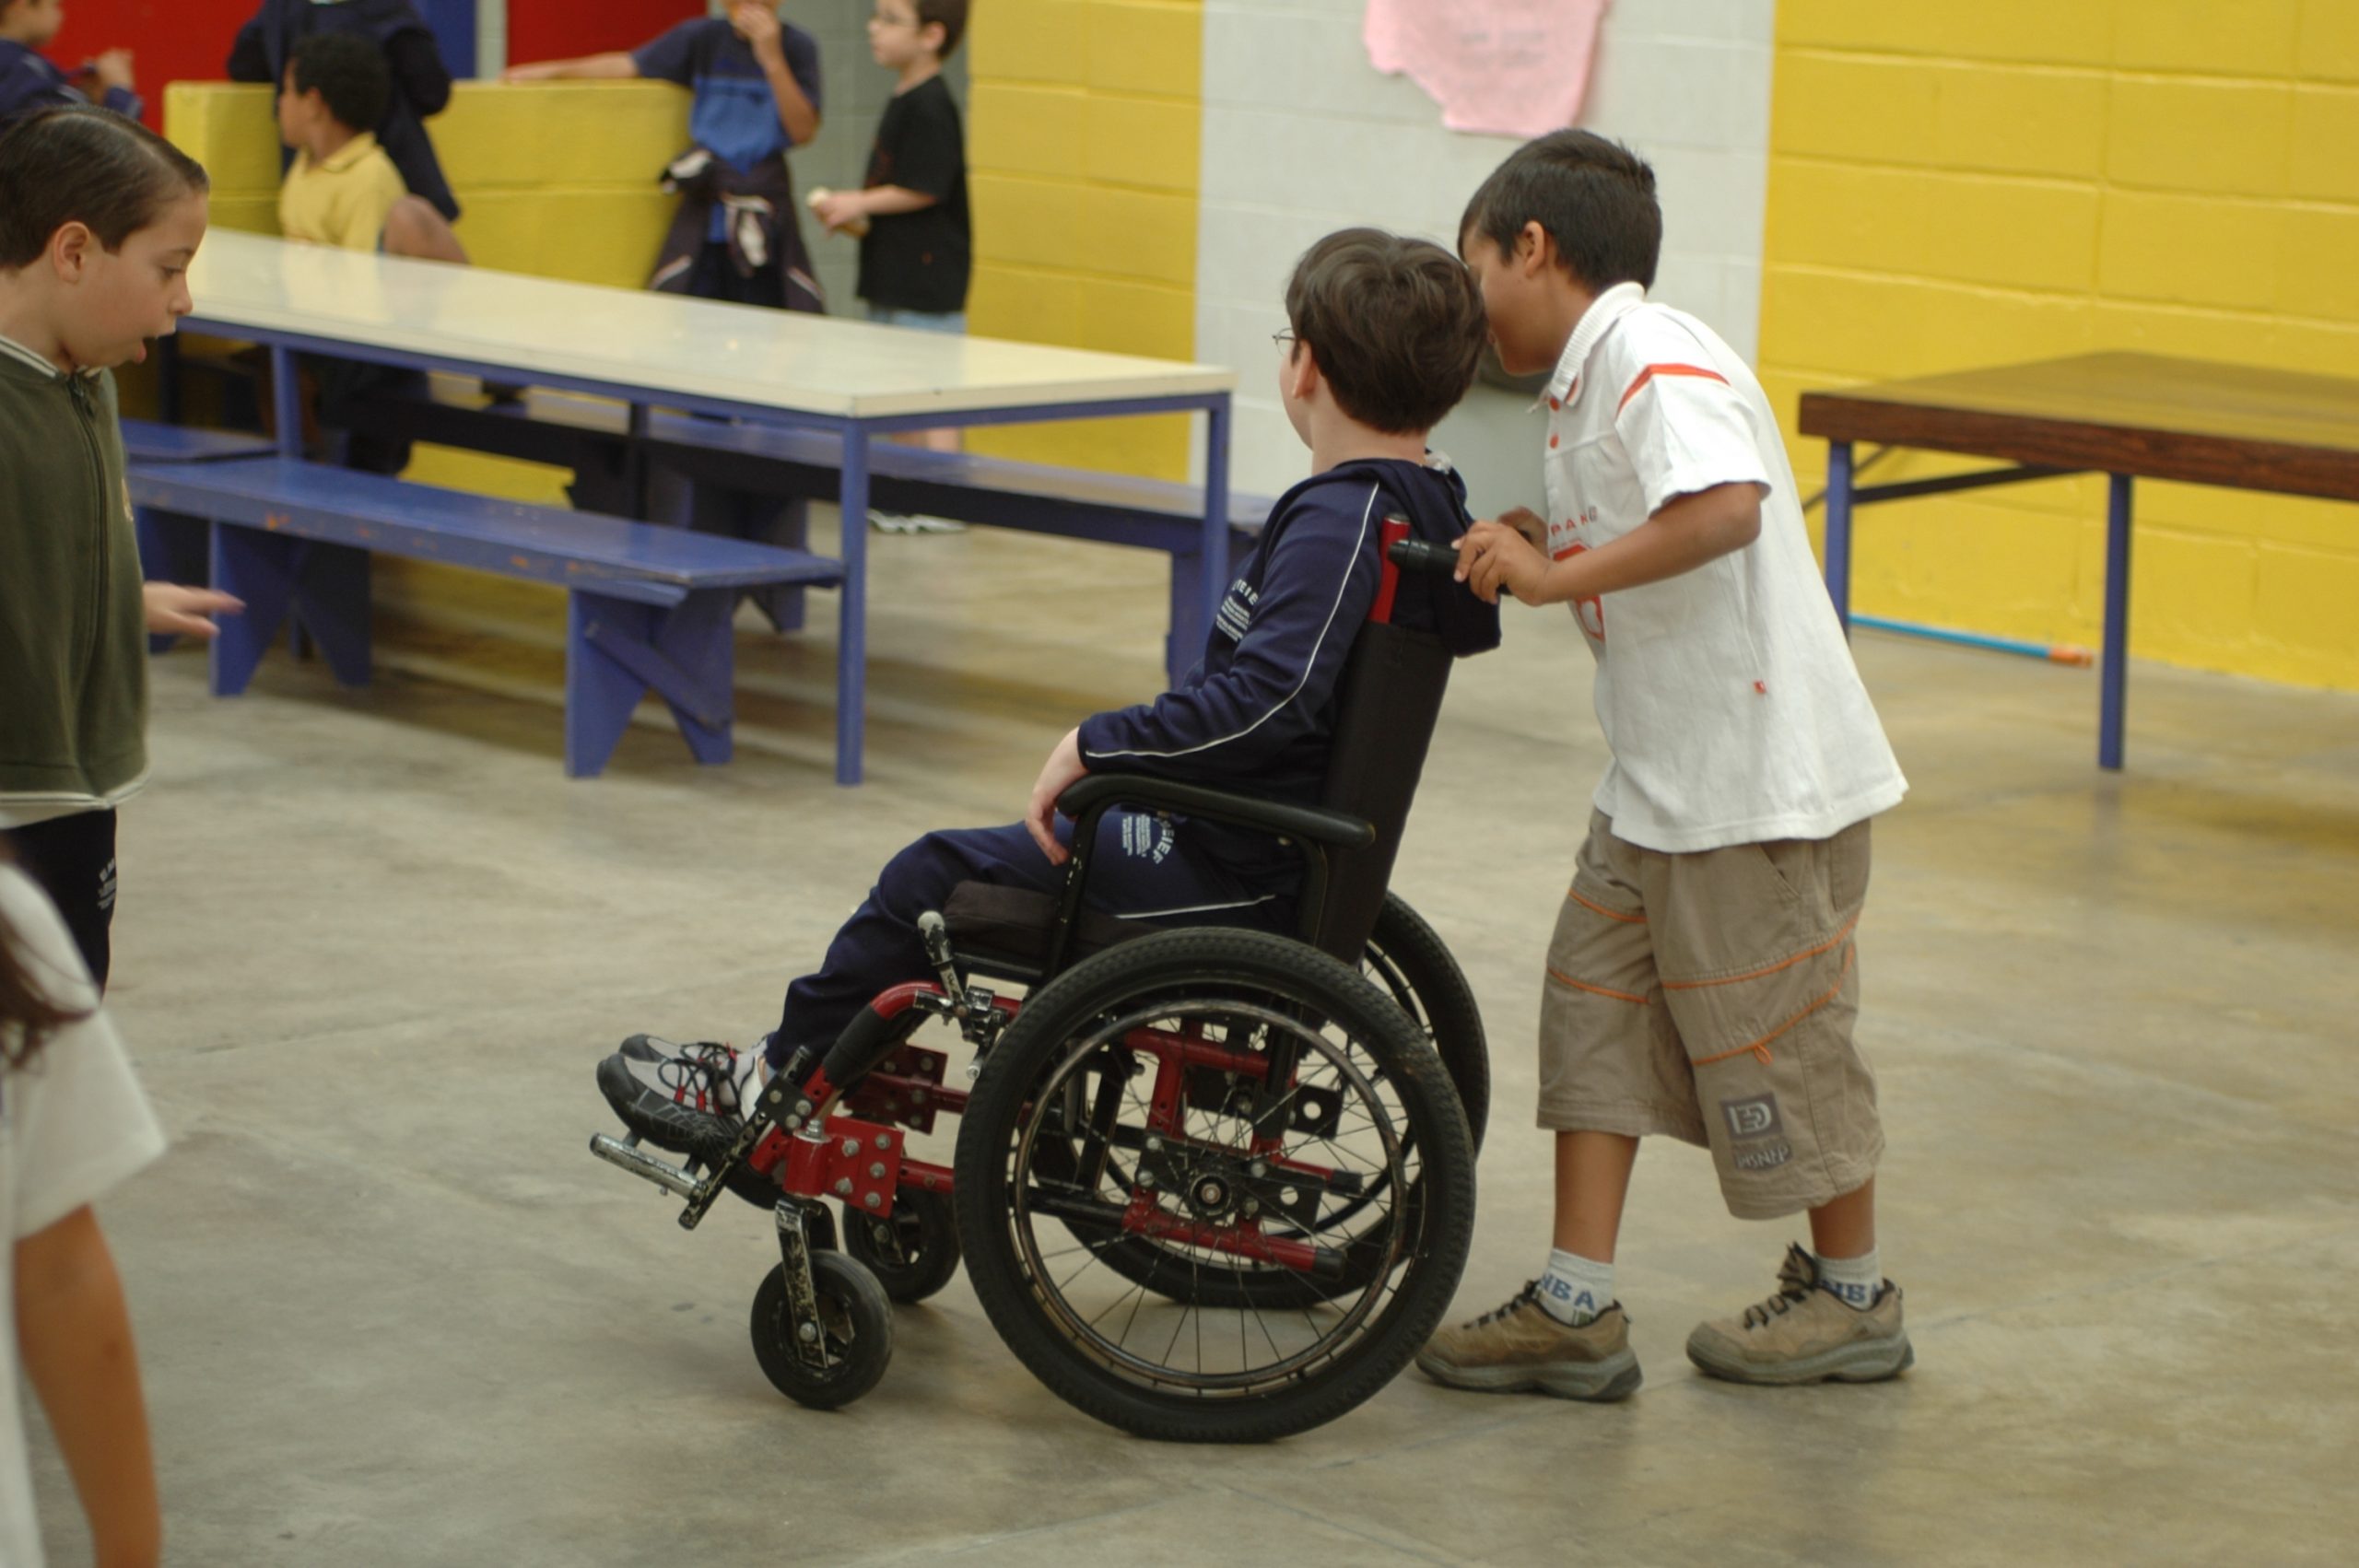 Aluno empurra a cadeira de rodas do colega em um pátio escolar com outras crianças.